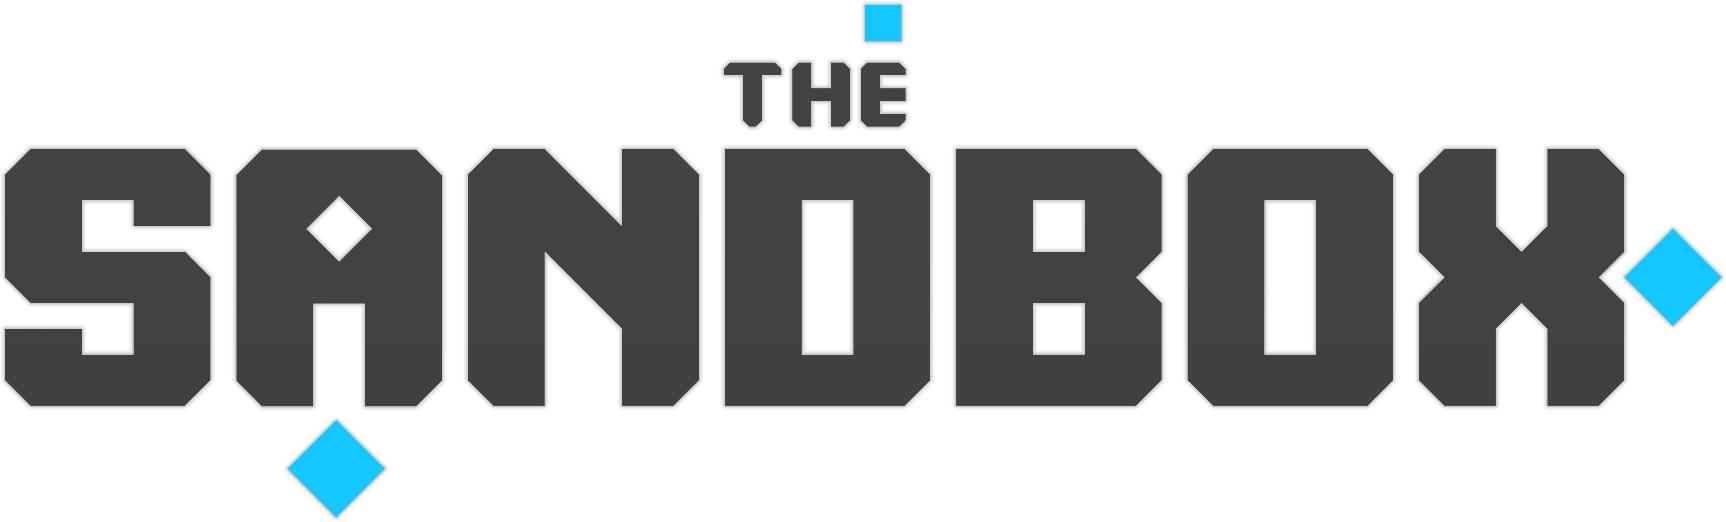 the sandbox logo.png